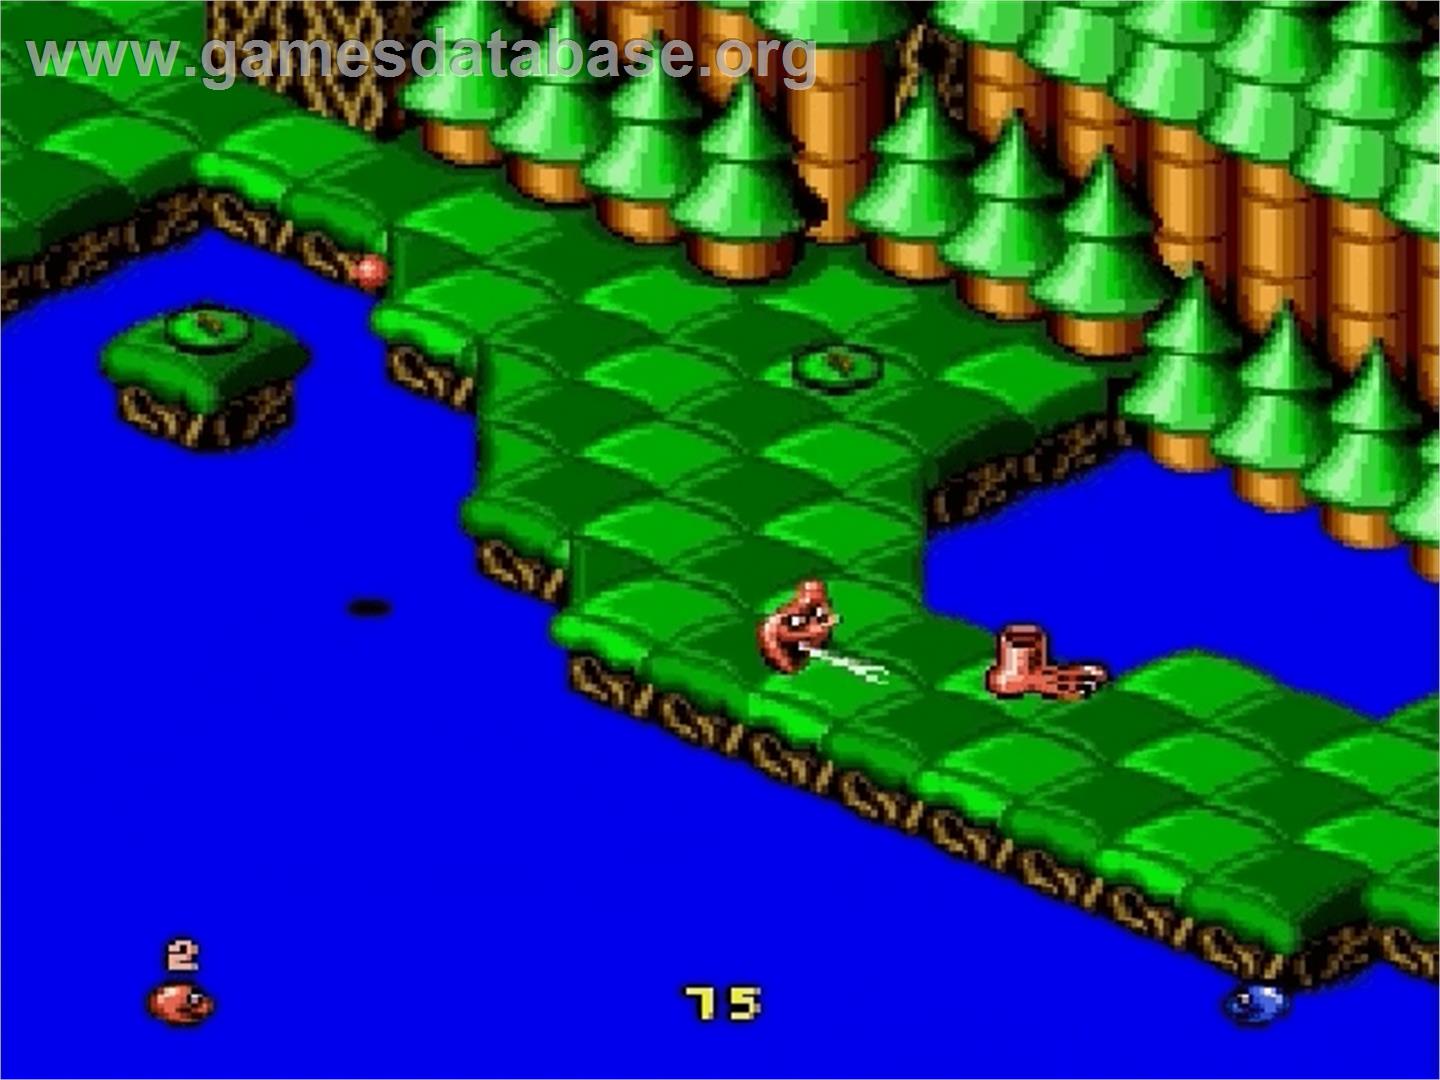 Snake Rattle 'n Roll - Sega Genesis - Artwork - In Game